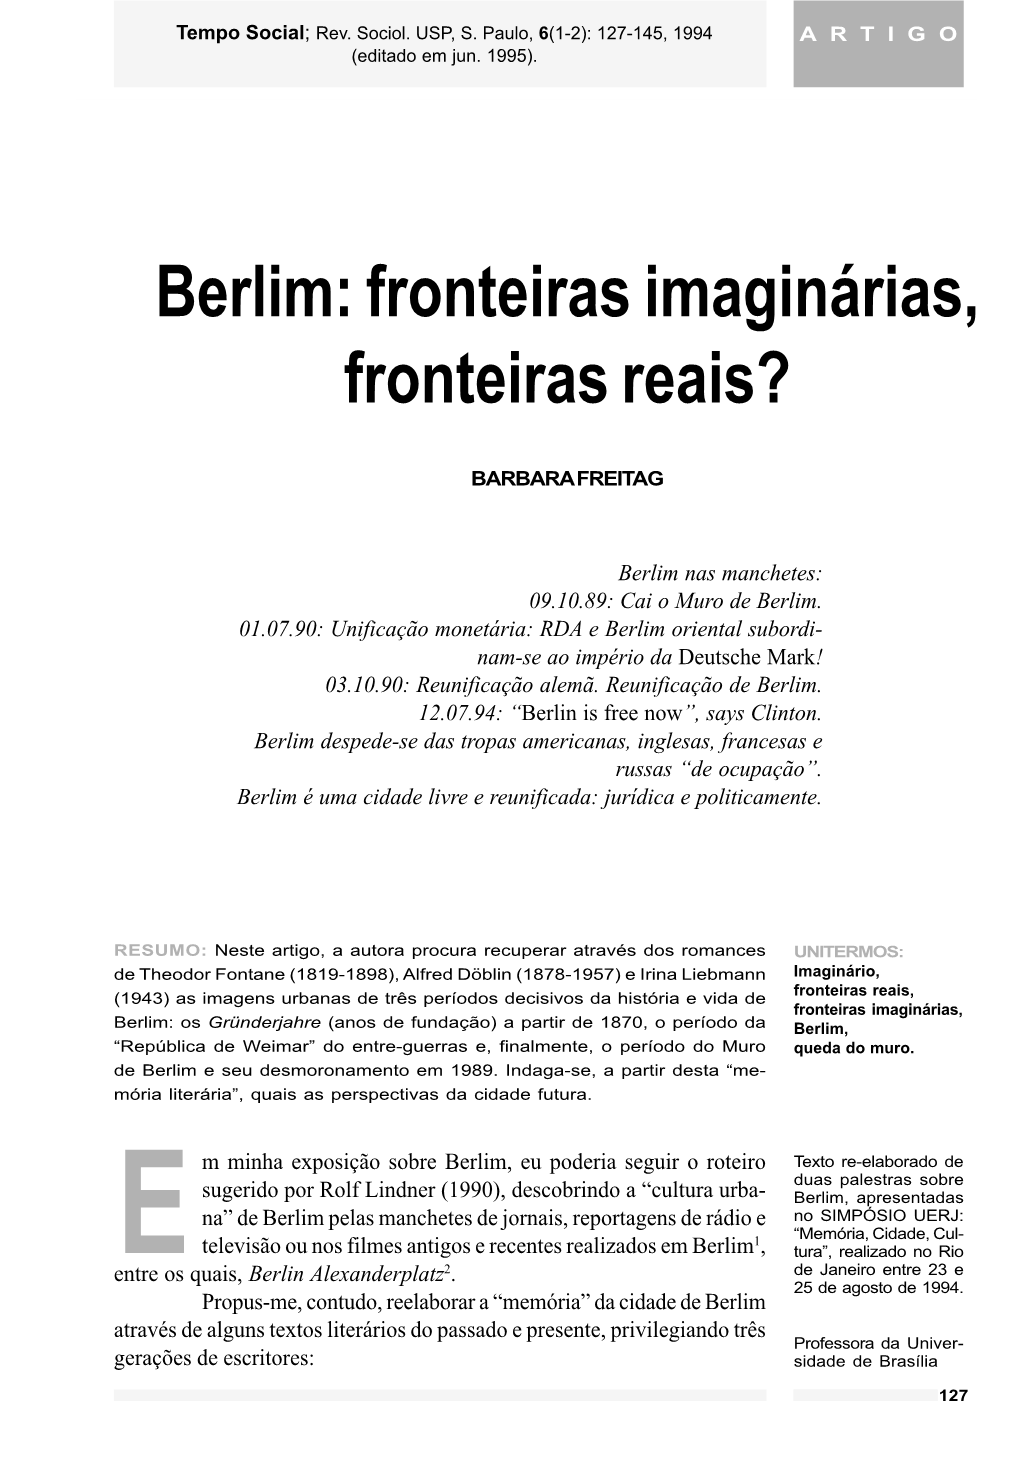 Berlim: Fronteiras Imaginárias, Fronteiras Reais?